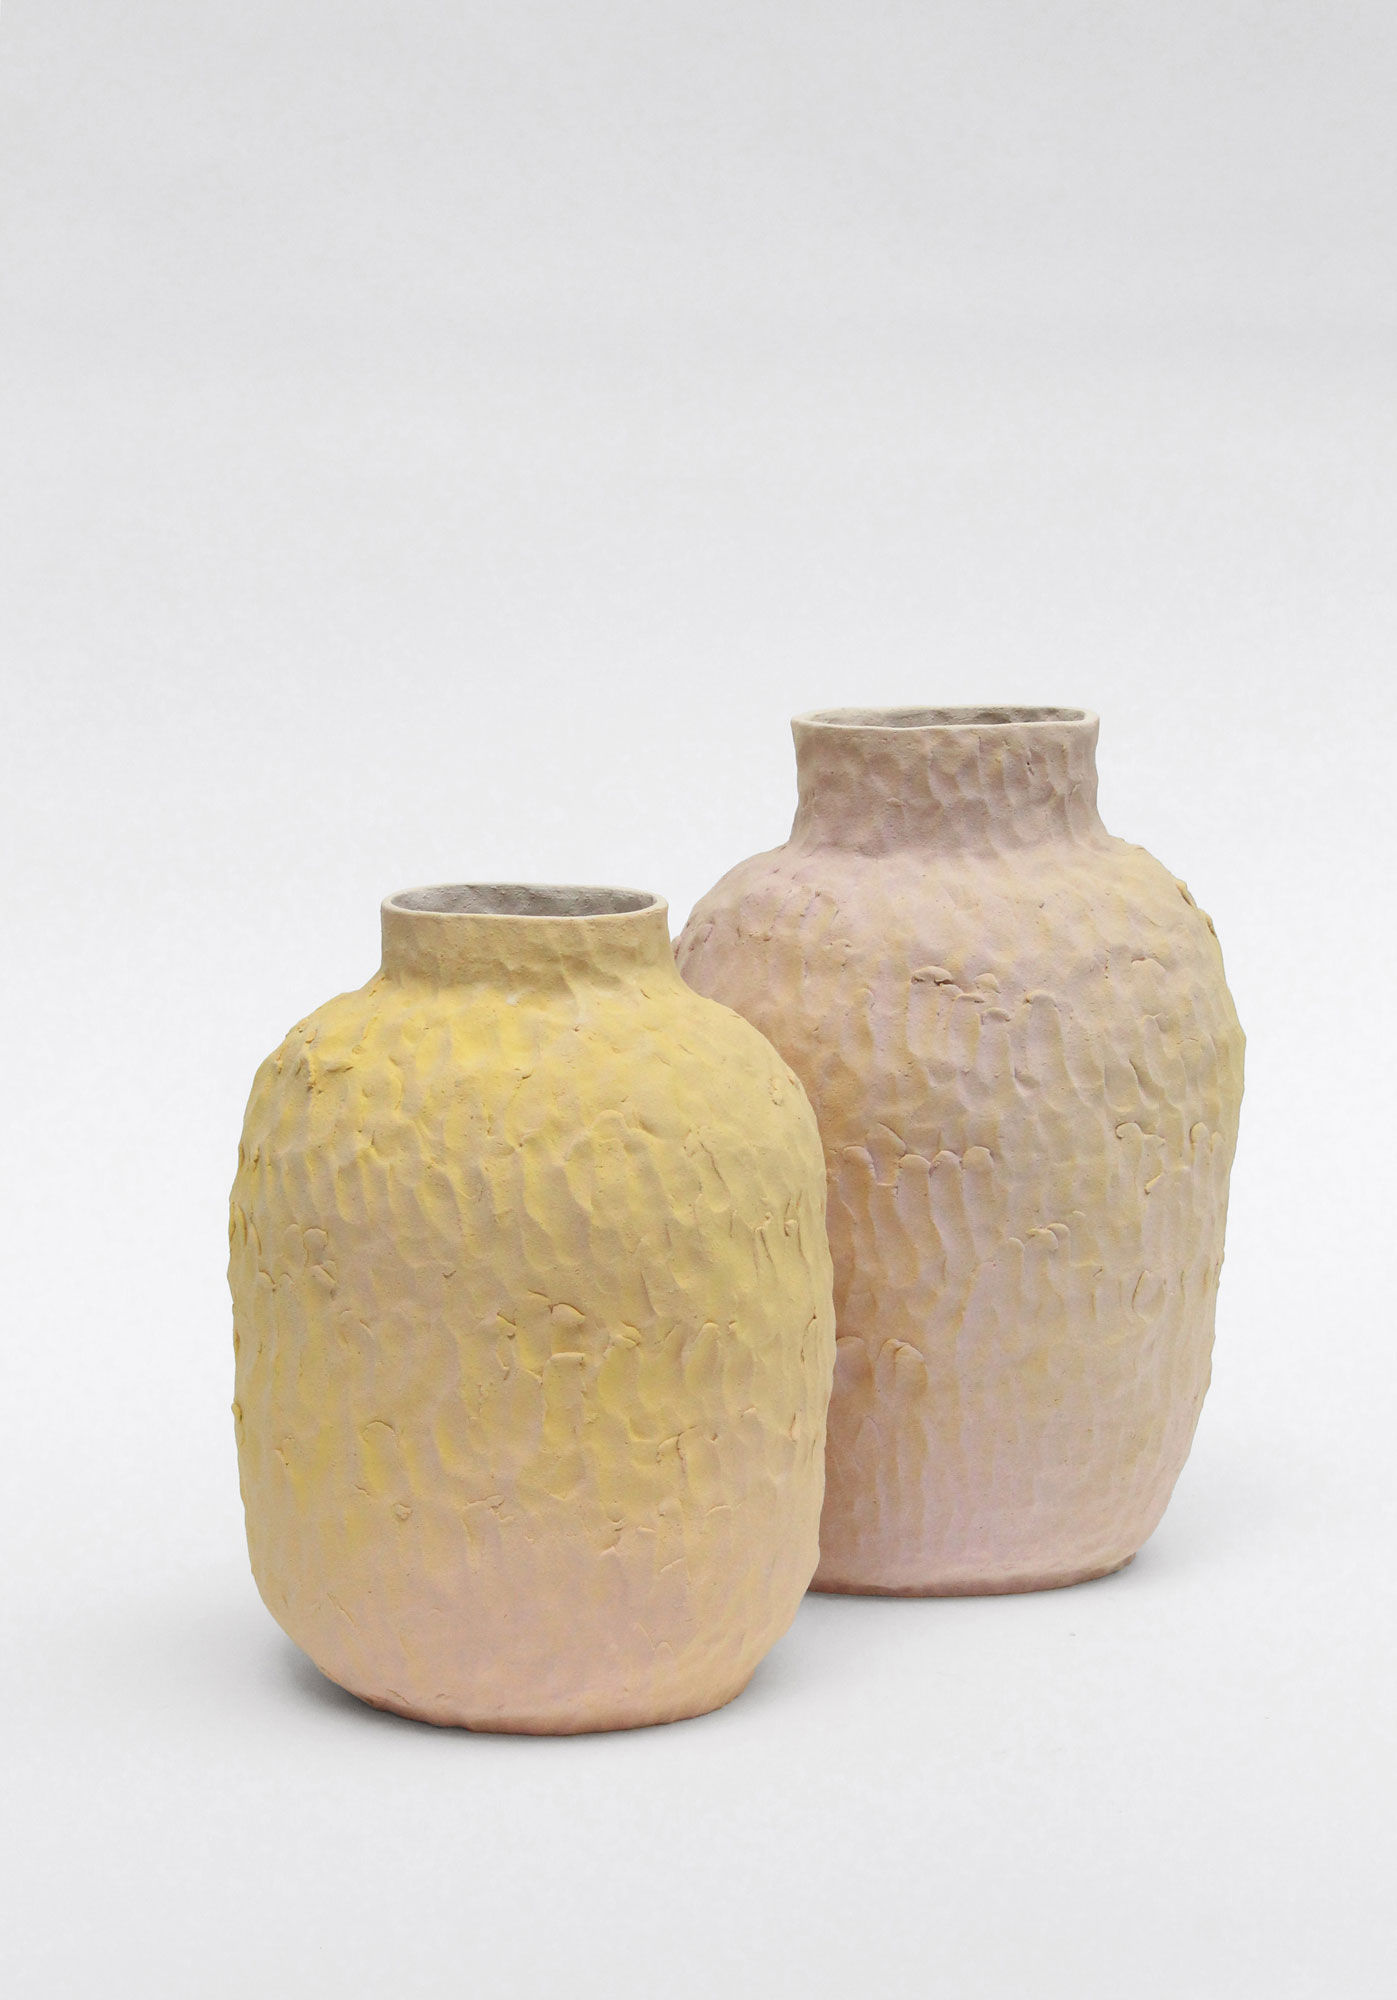 Ports-pourris - Ensemble de céramiques sculpturales « toxiques » - Grès et émail plombifère incuit - de gauche à droite : pièce n°4. 21 x 17,5 x 33,5 cm, pièce n°5. 20 x 17 x 29 cm - 2020